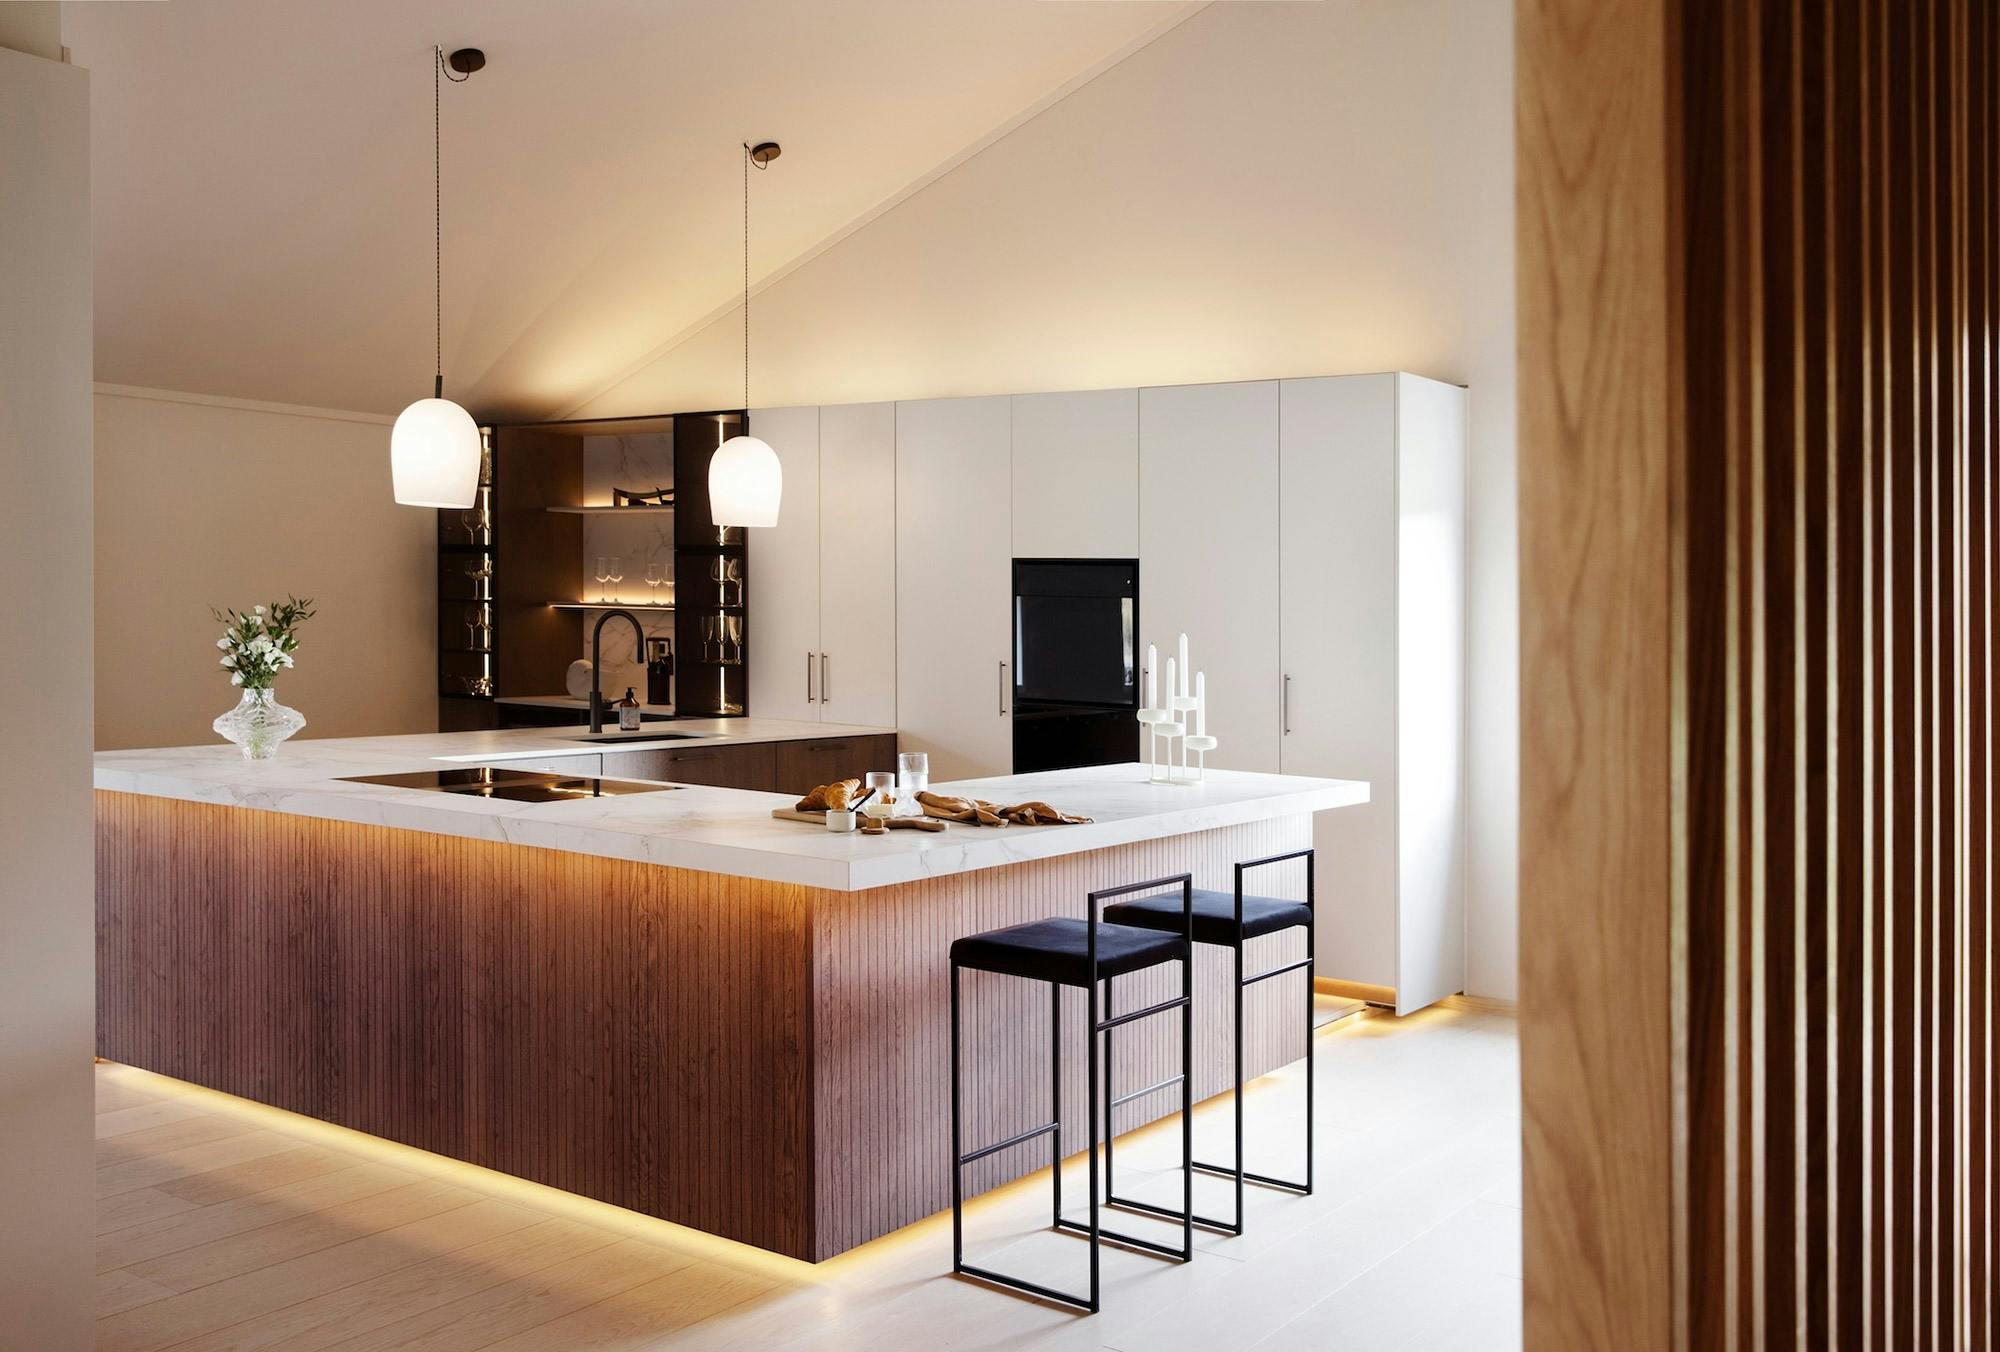 Numero immagine 35 della sezione corrente di Architect and interior designer Memmu Pitkänen chose the beautiful Dekton Helena for her kitchen di Cosentino Italia